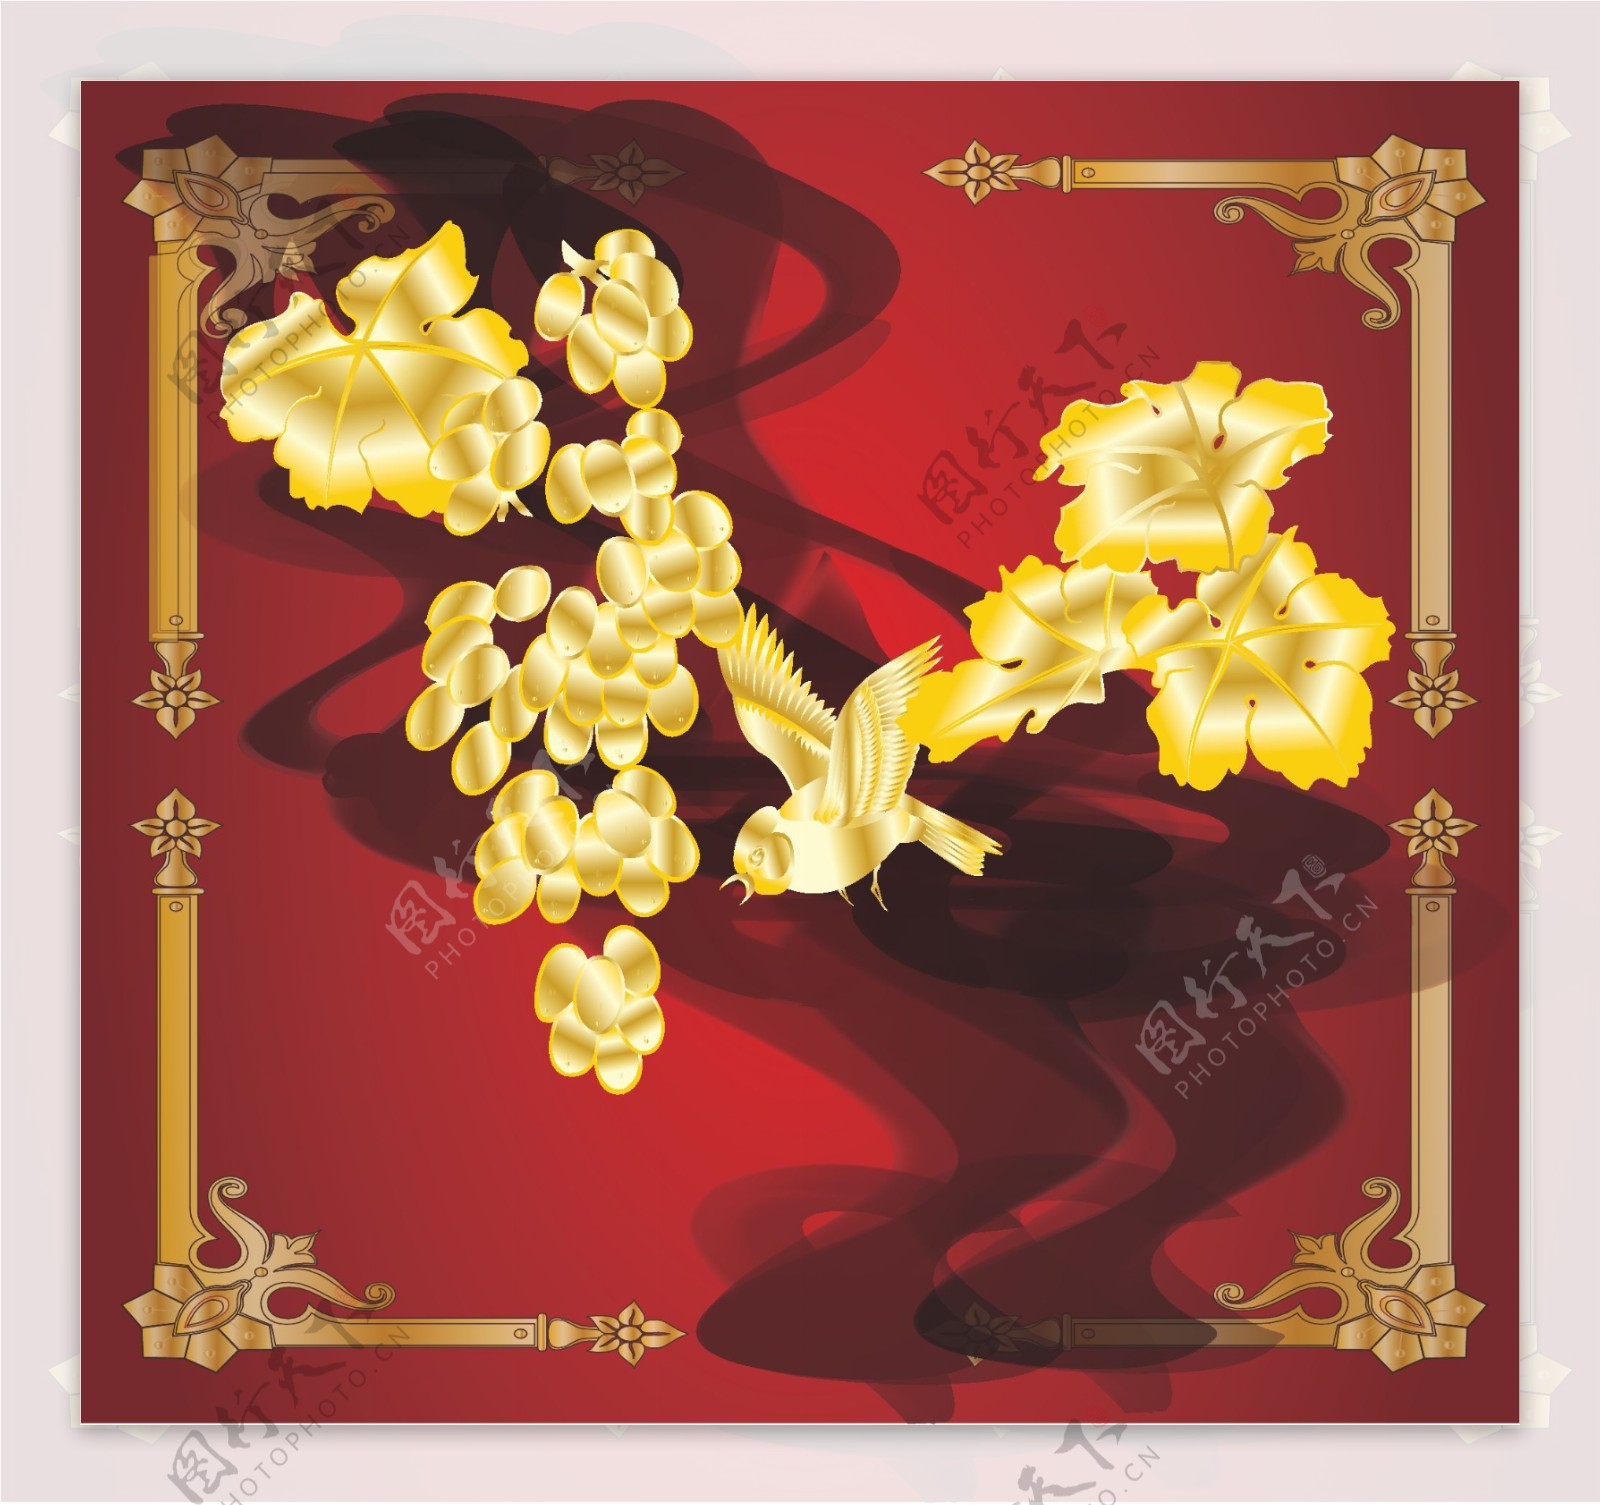 精美矢量黄金样式花鸟装饰图片素材2